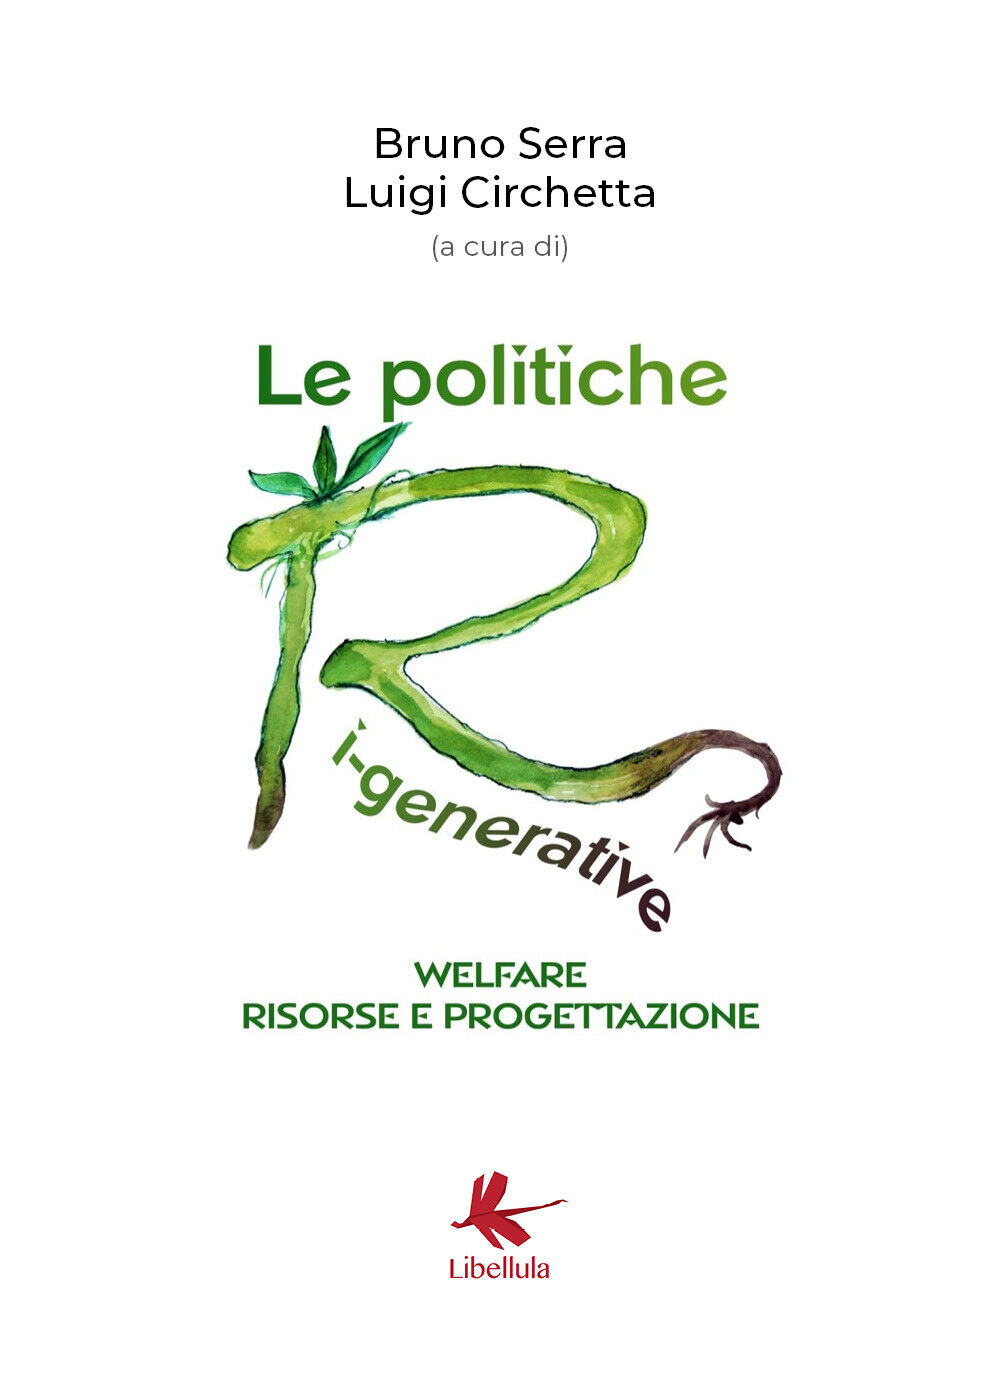 Le politiche ri-generative, welfare, risorse e progettazione - Serra, Circhetta libro usato